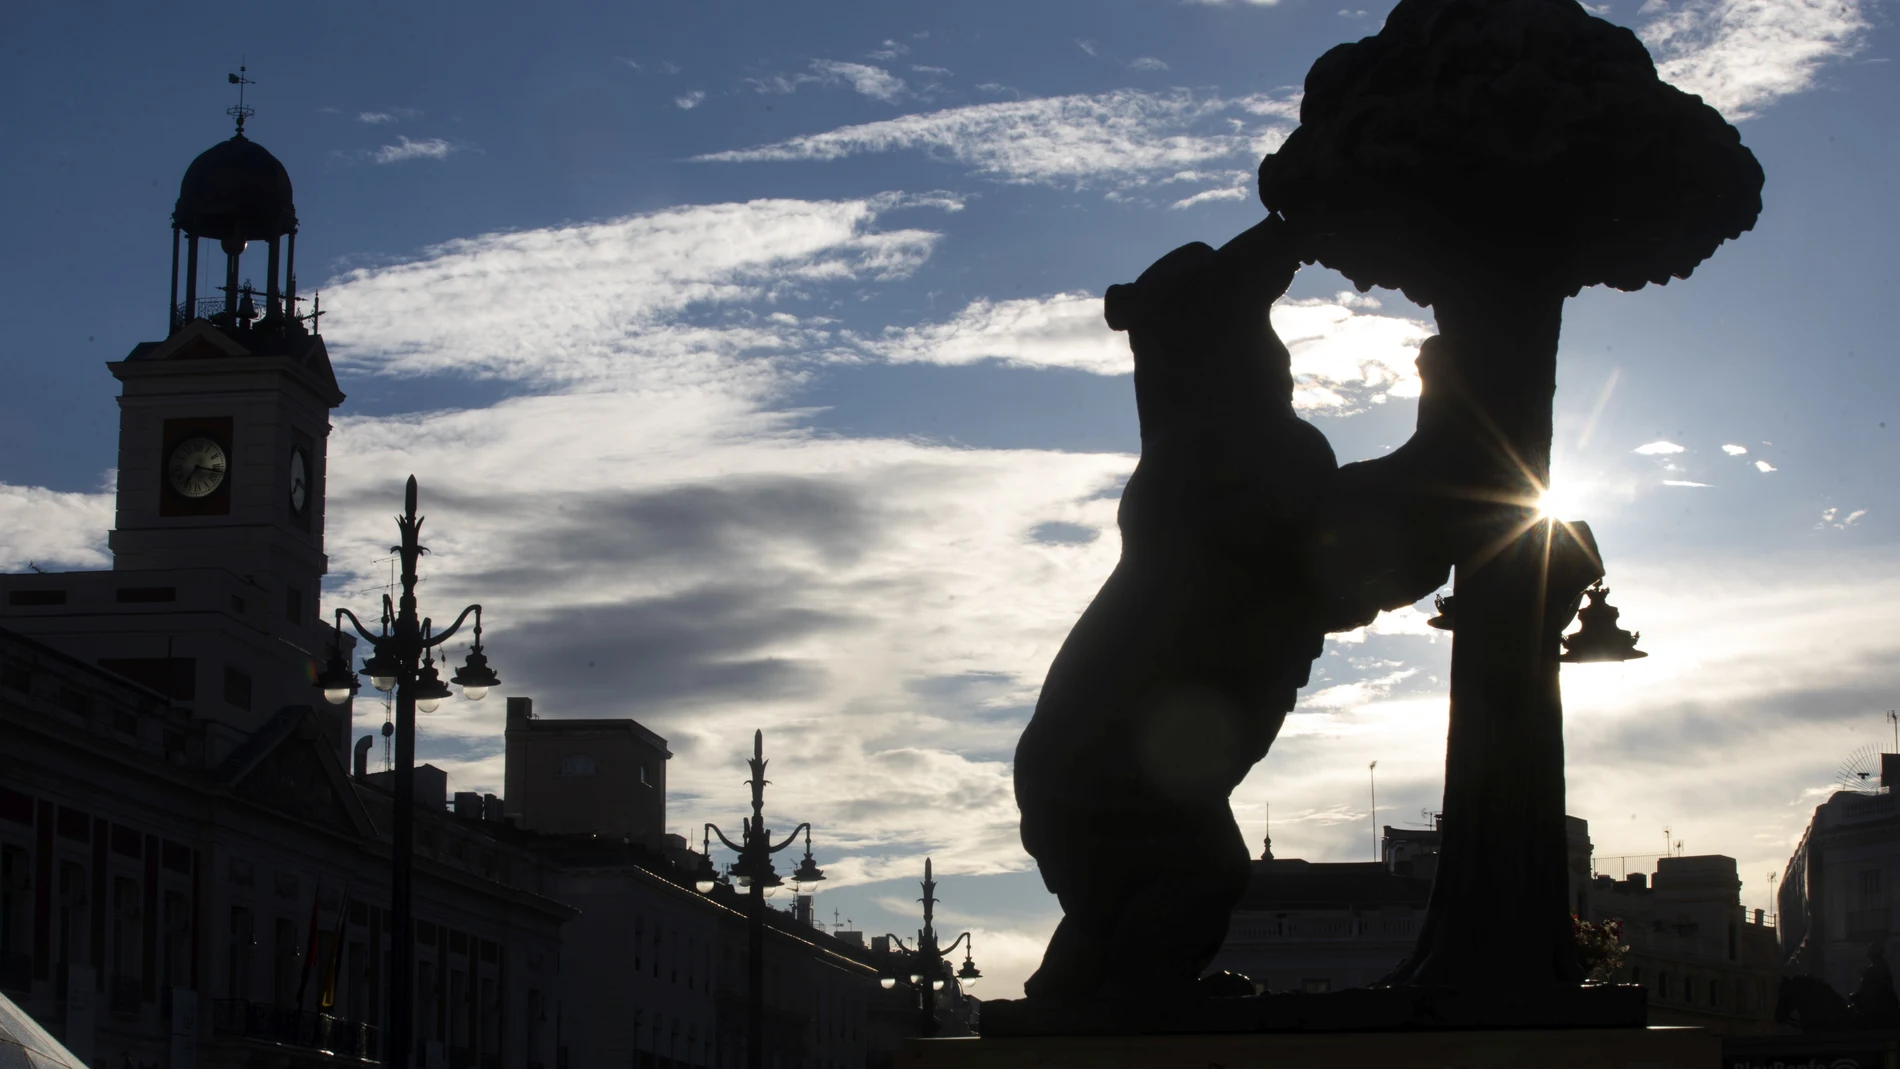 Imagen de la Puerta del Sol de Madrid con el Oso y el Madroño